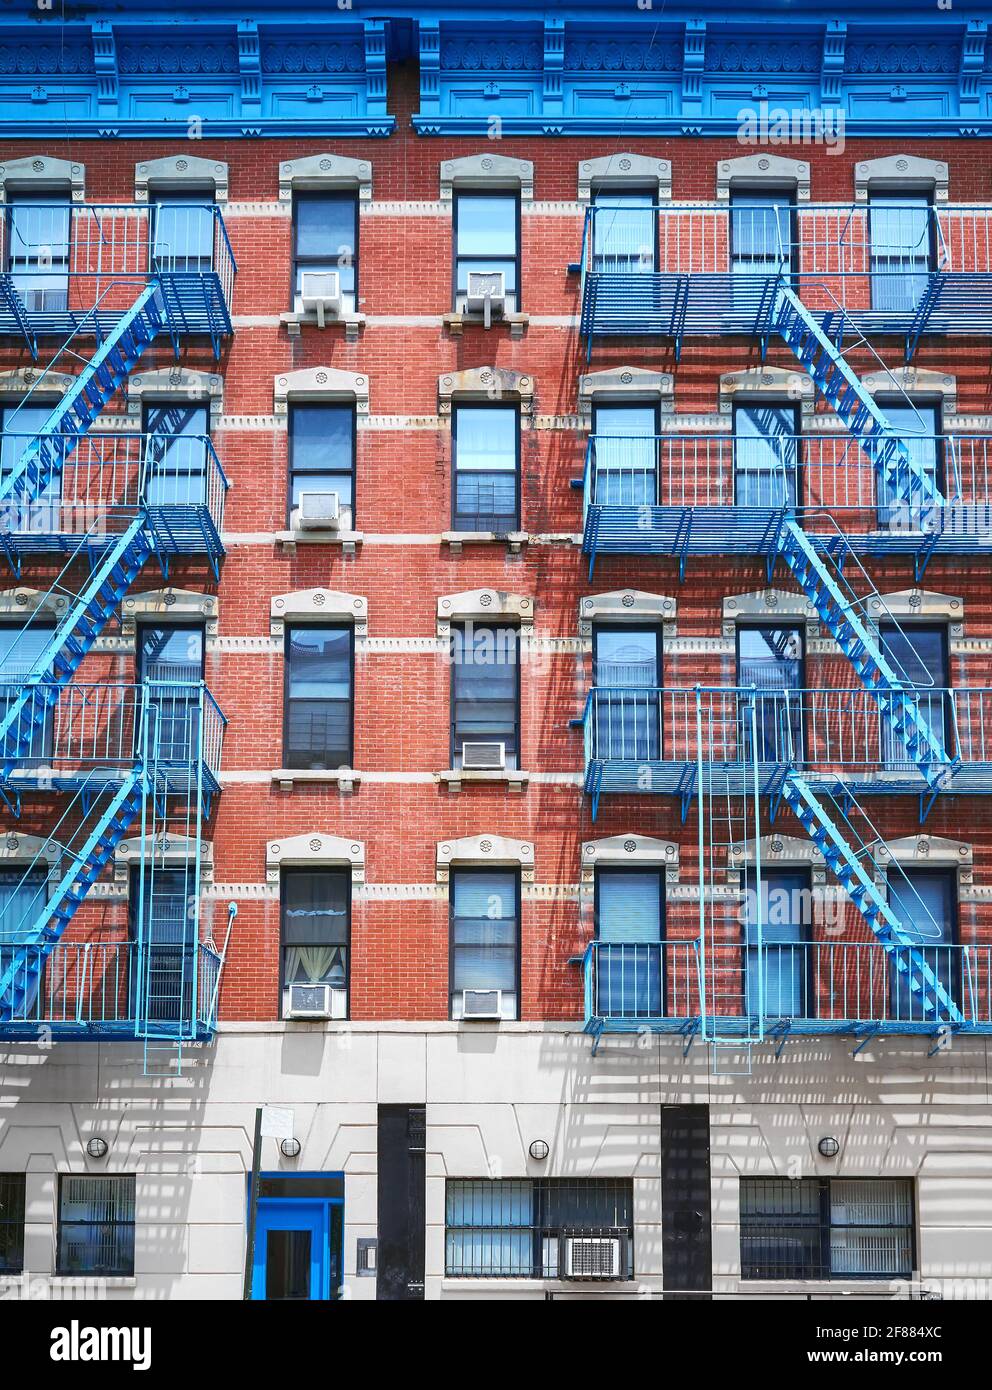 Vieux bâtiment en brique rouge avec des évasions de feu de fer bleu, New York City, États-Unis. Banque D'Images